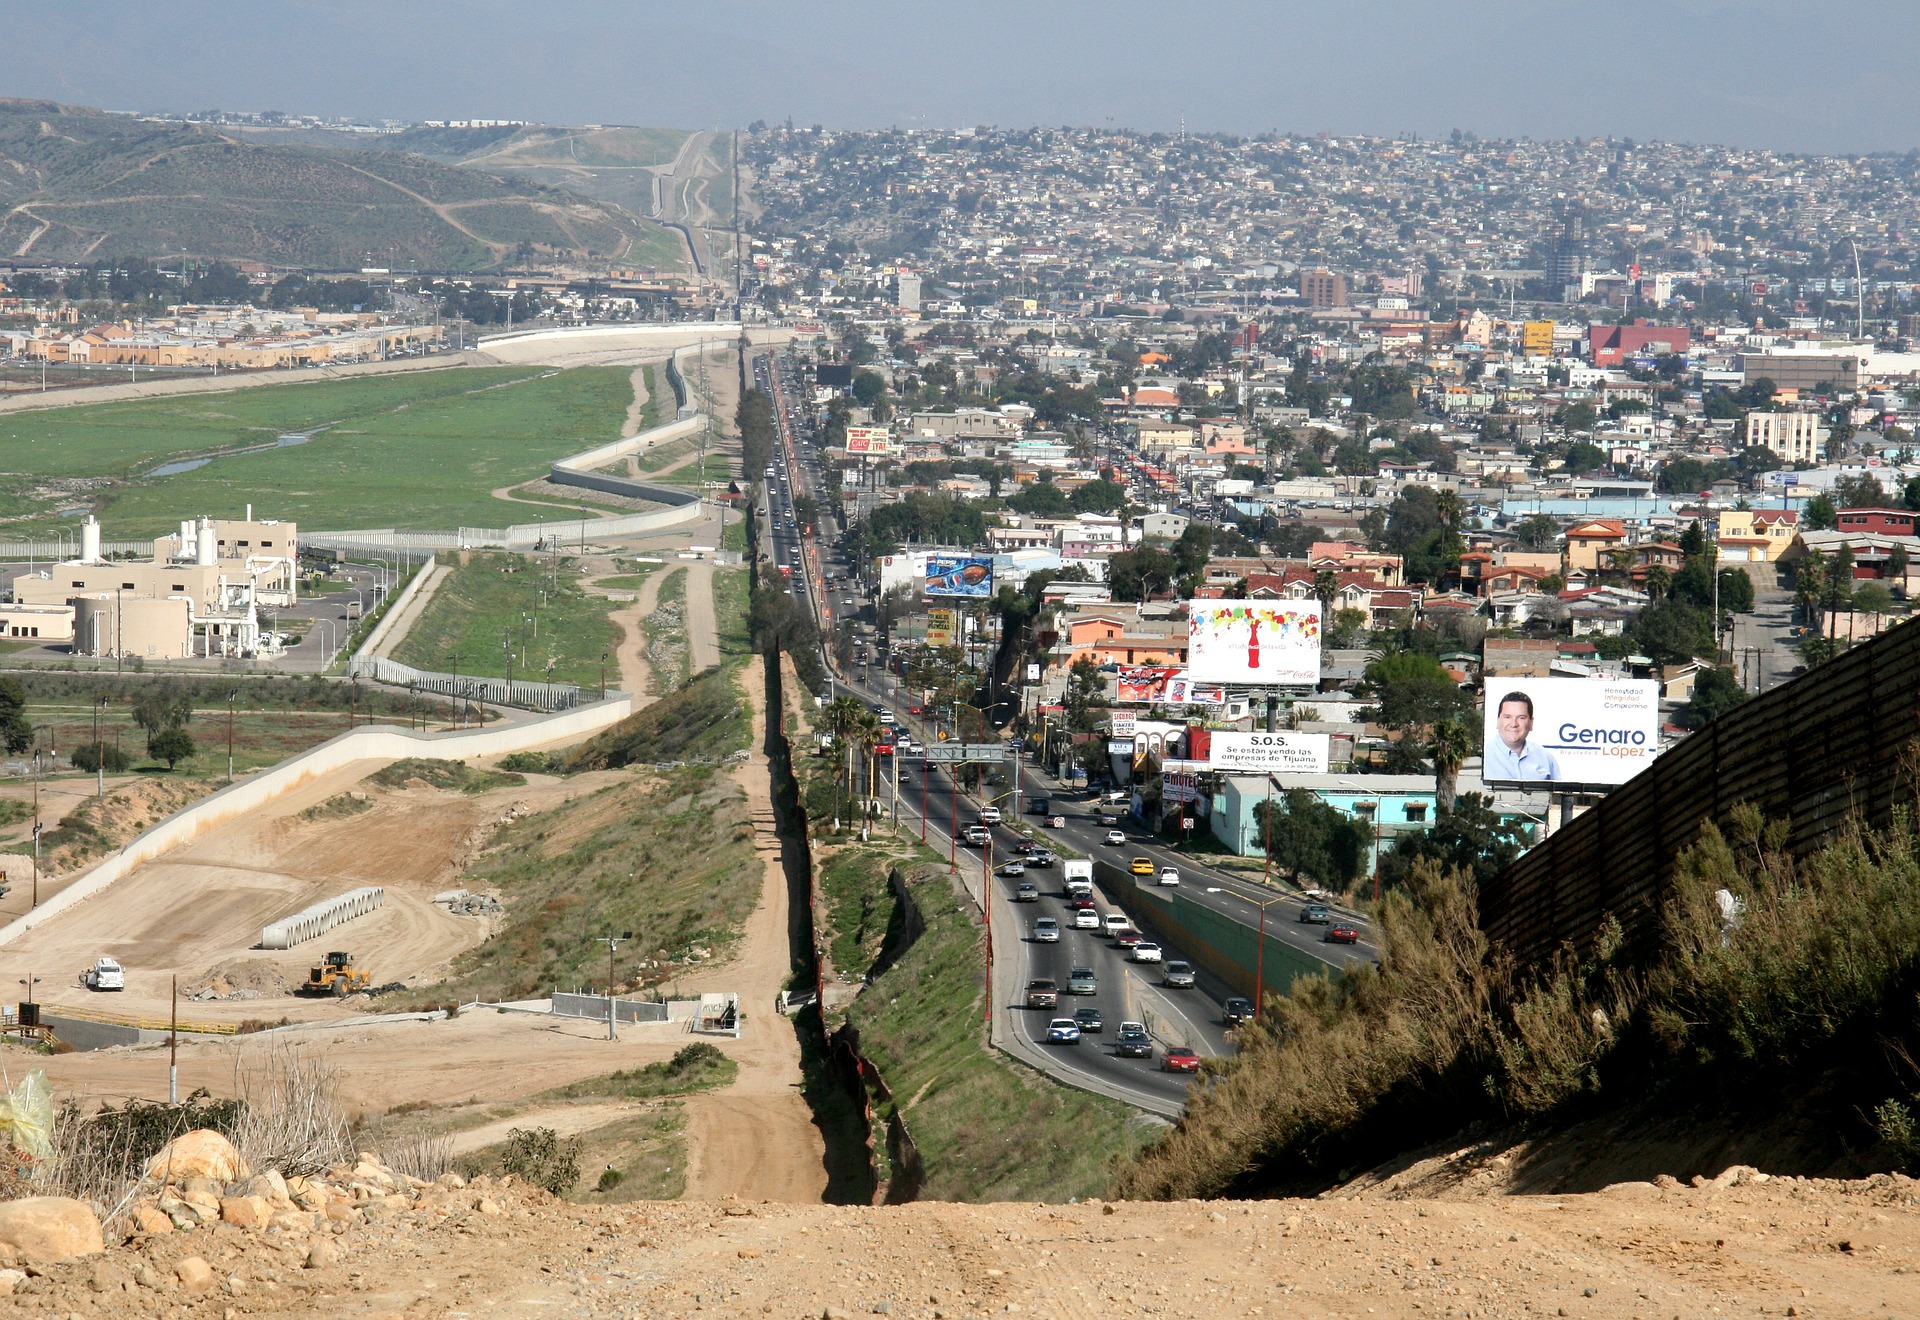 Grenze zwischen den USA und Mexiko, auf der einen Seite dicht bebaut, auf der anderen Grenzschutzanlagen